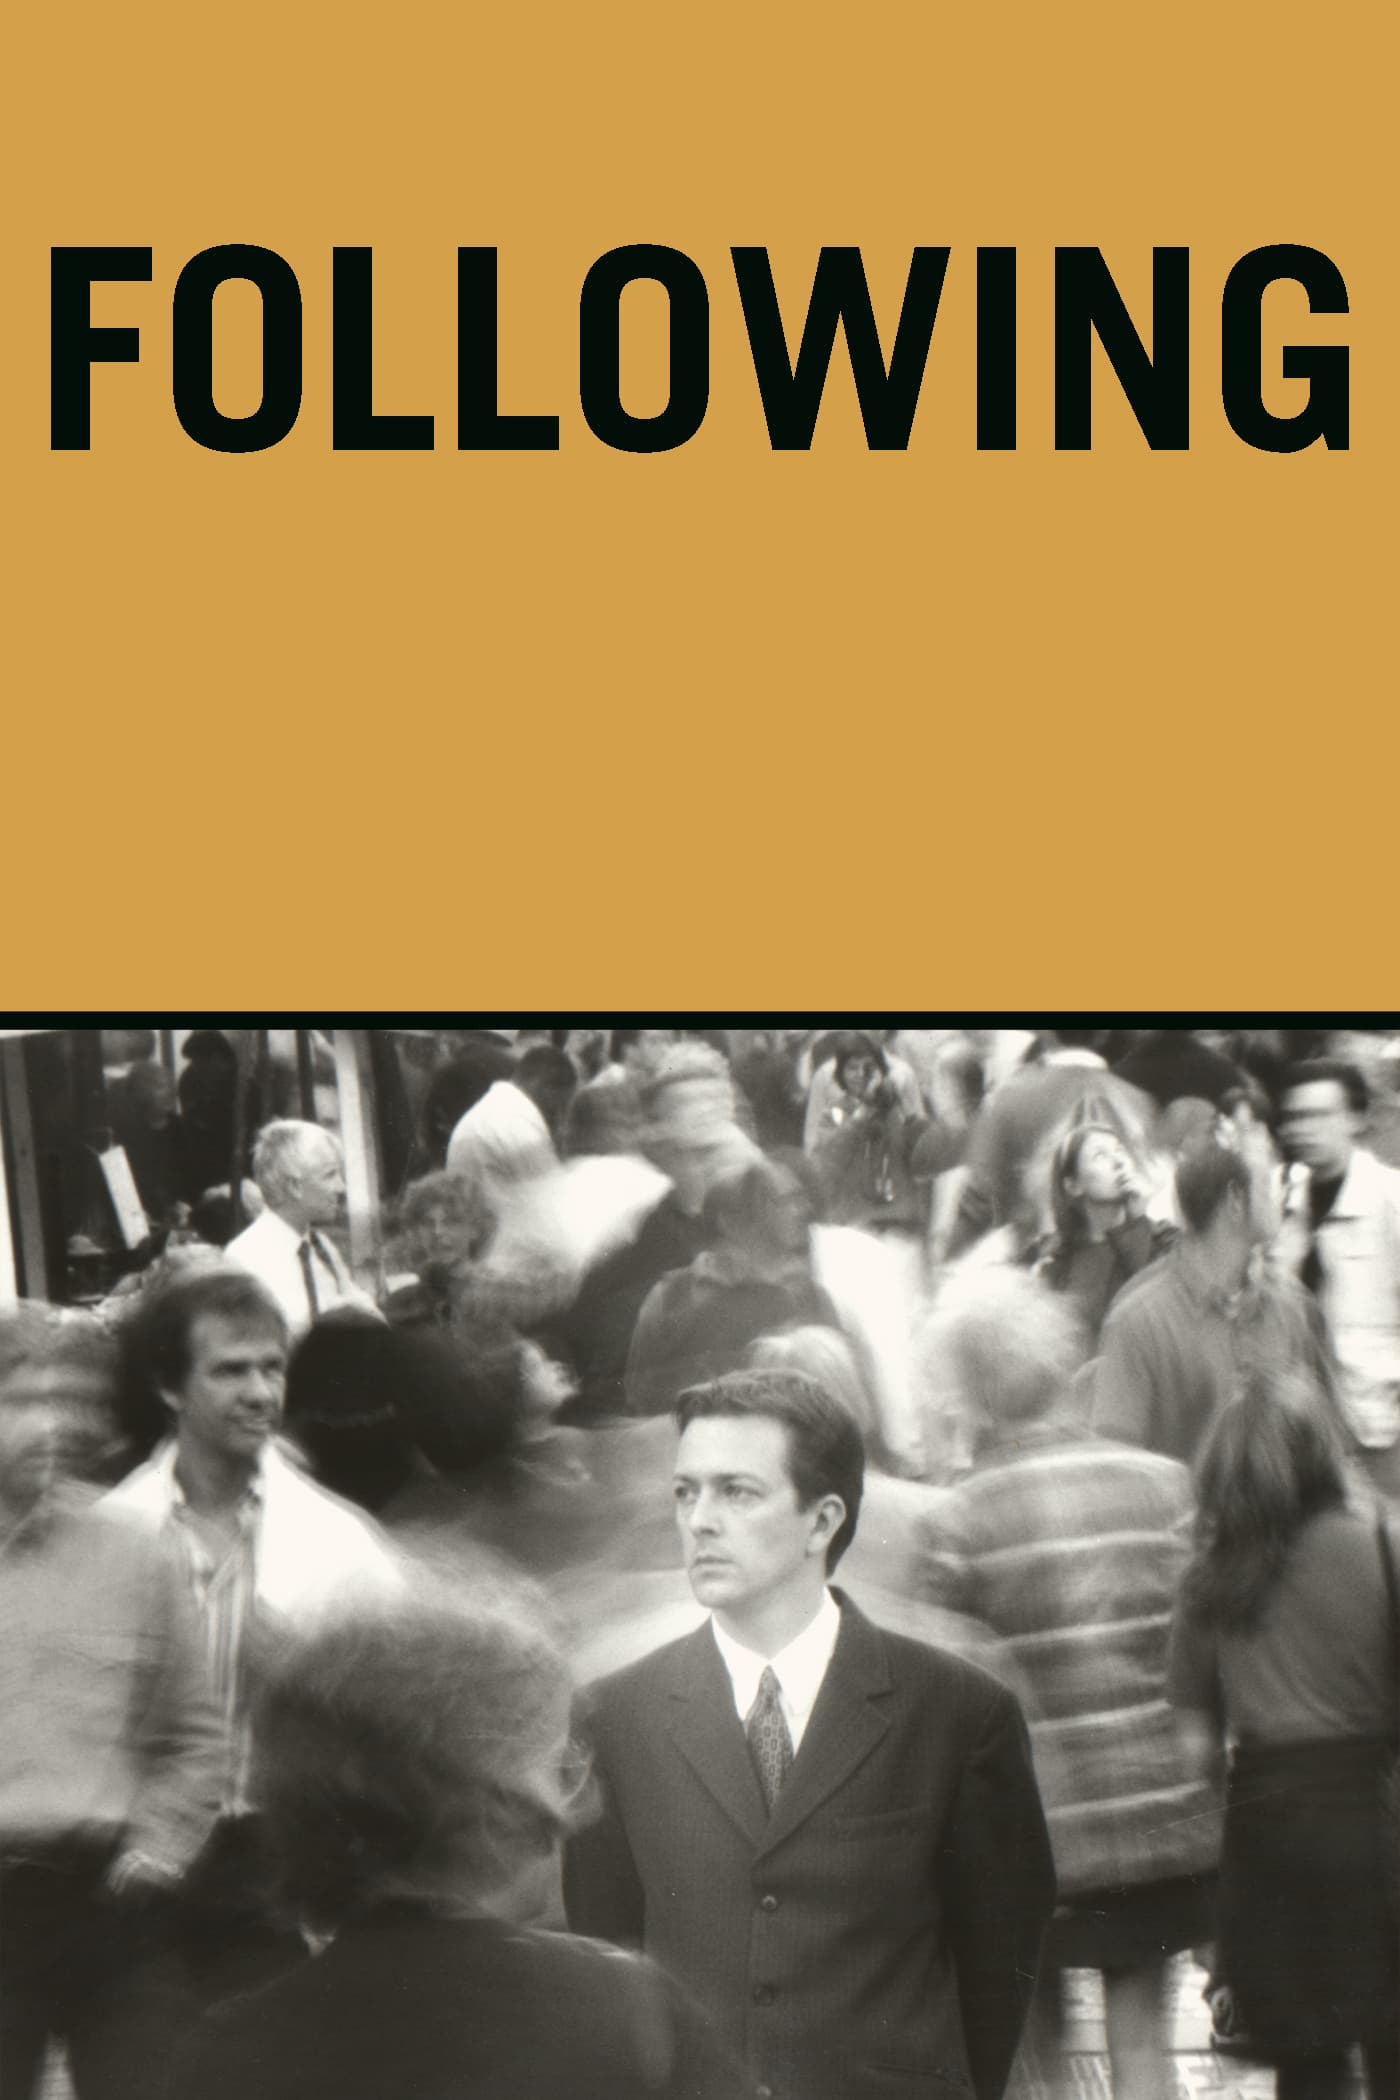 Following, le suiveur